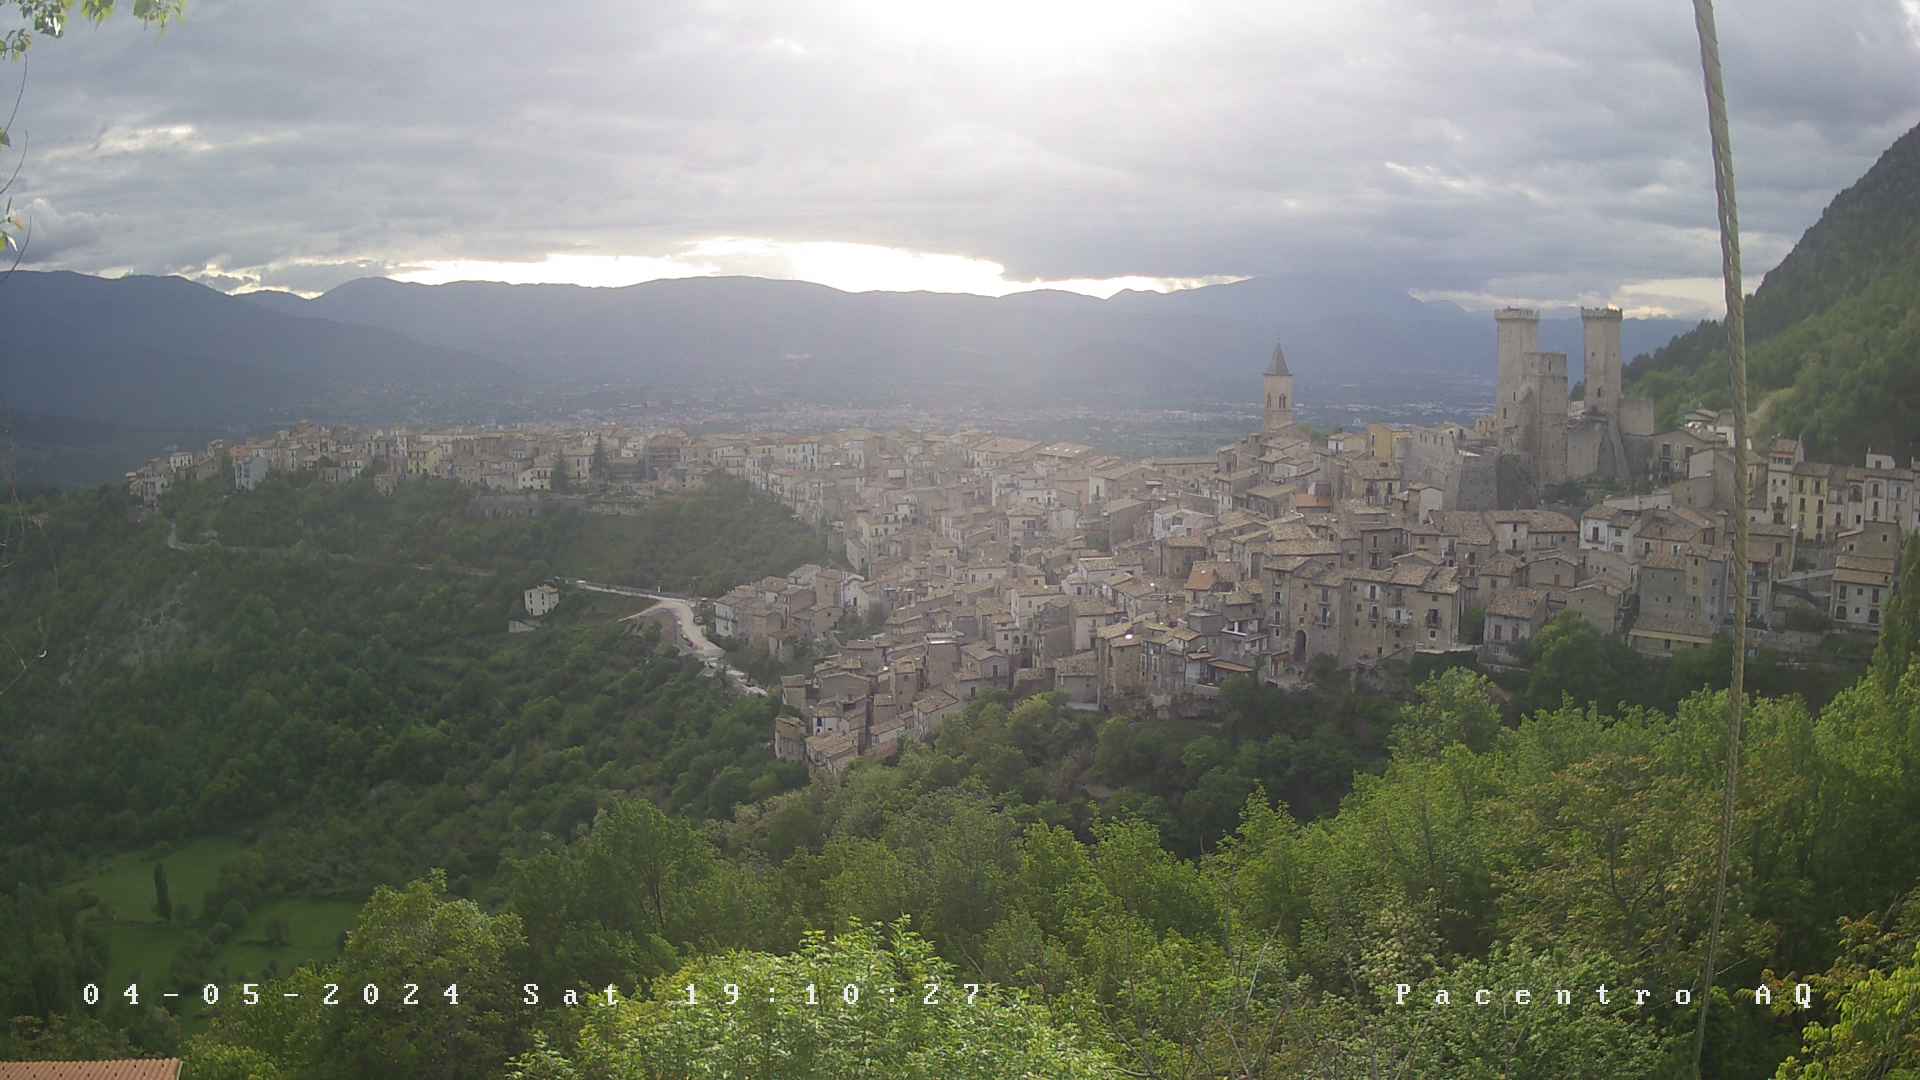 Webcam Pacentro - Passo San Leonardo